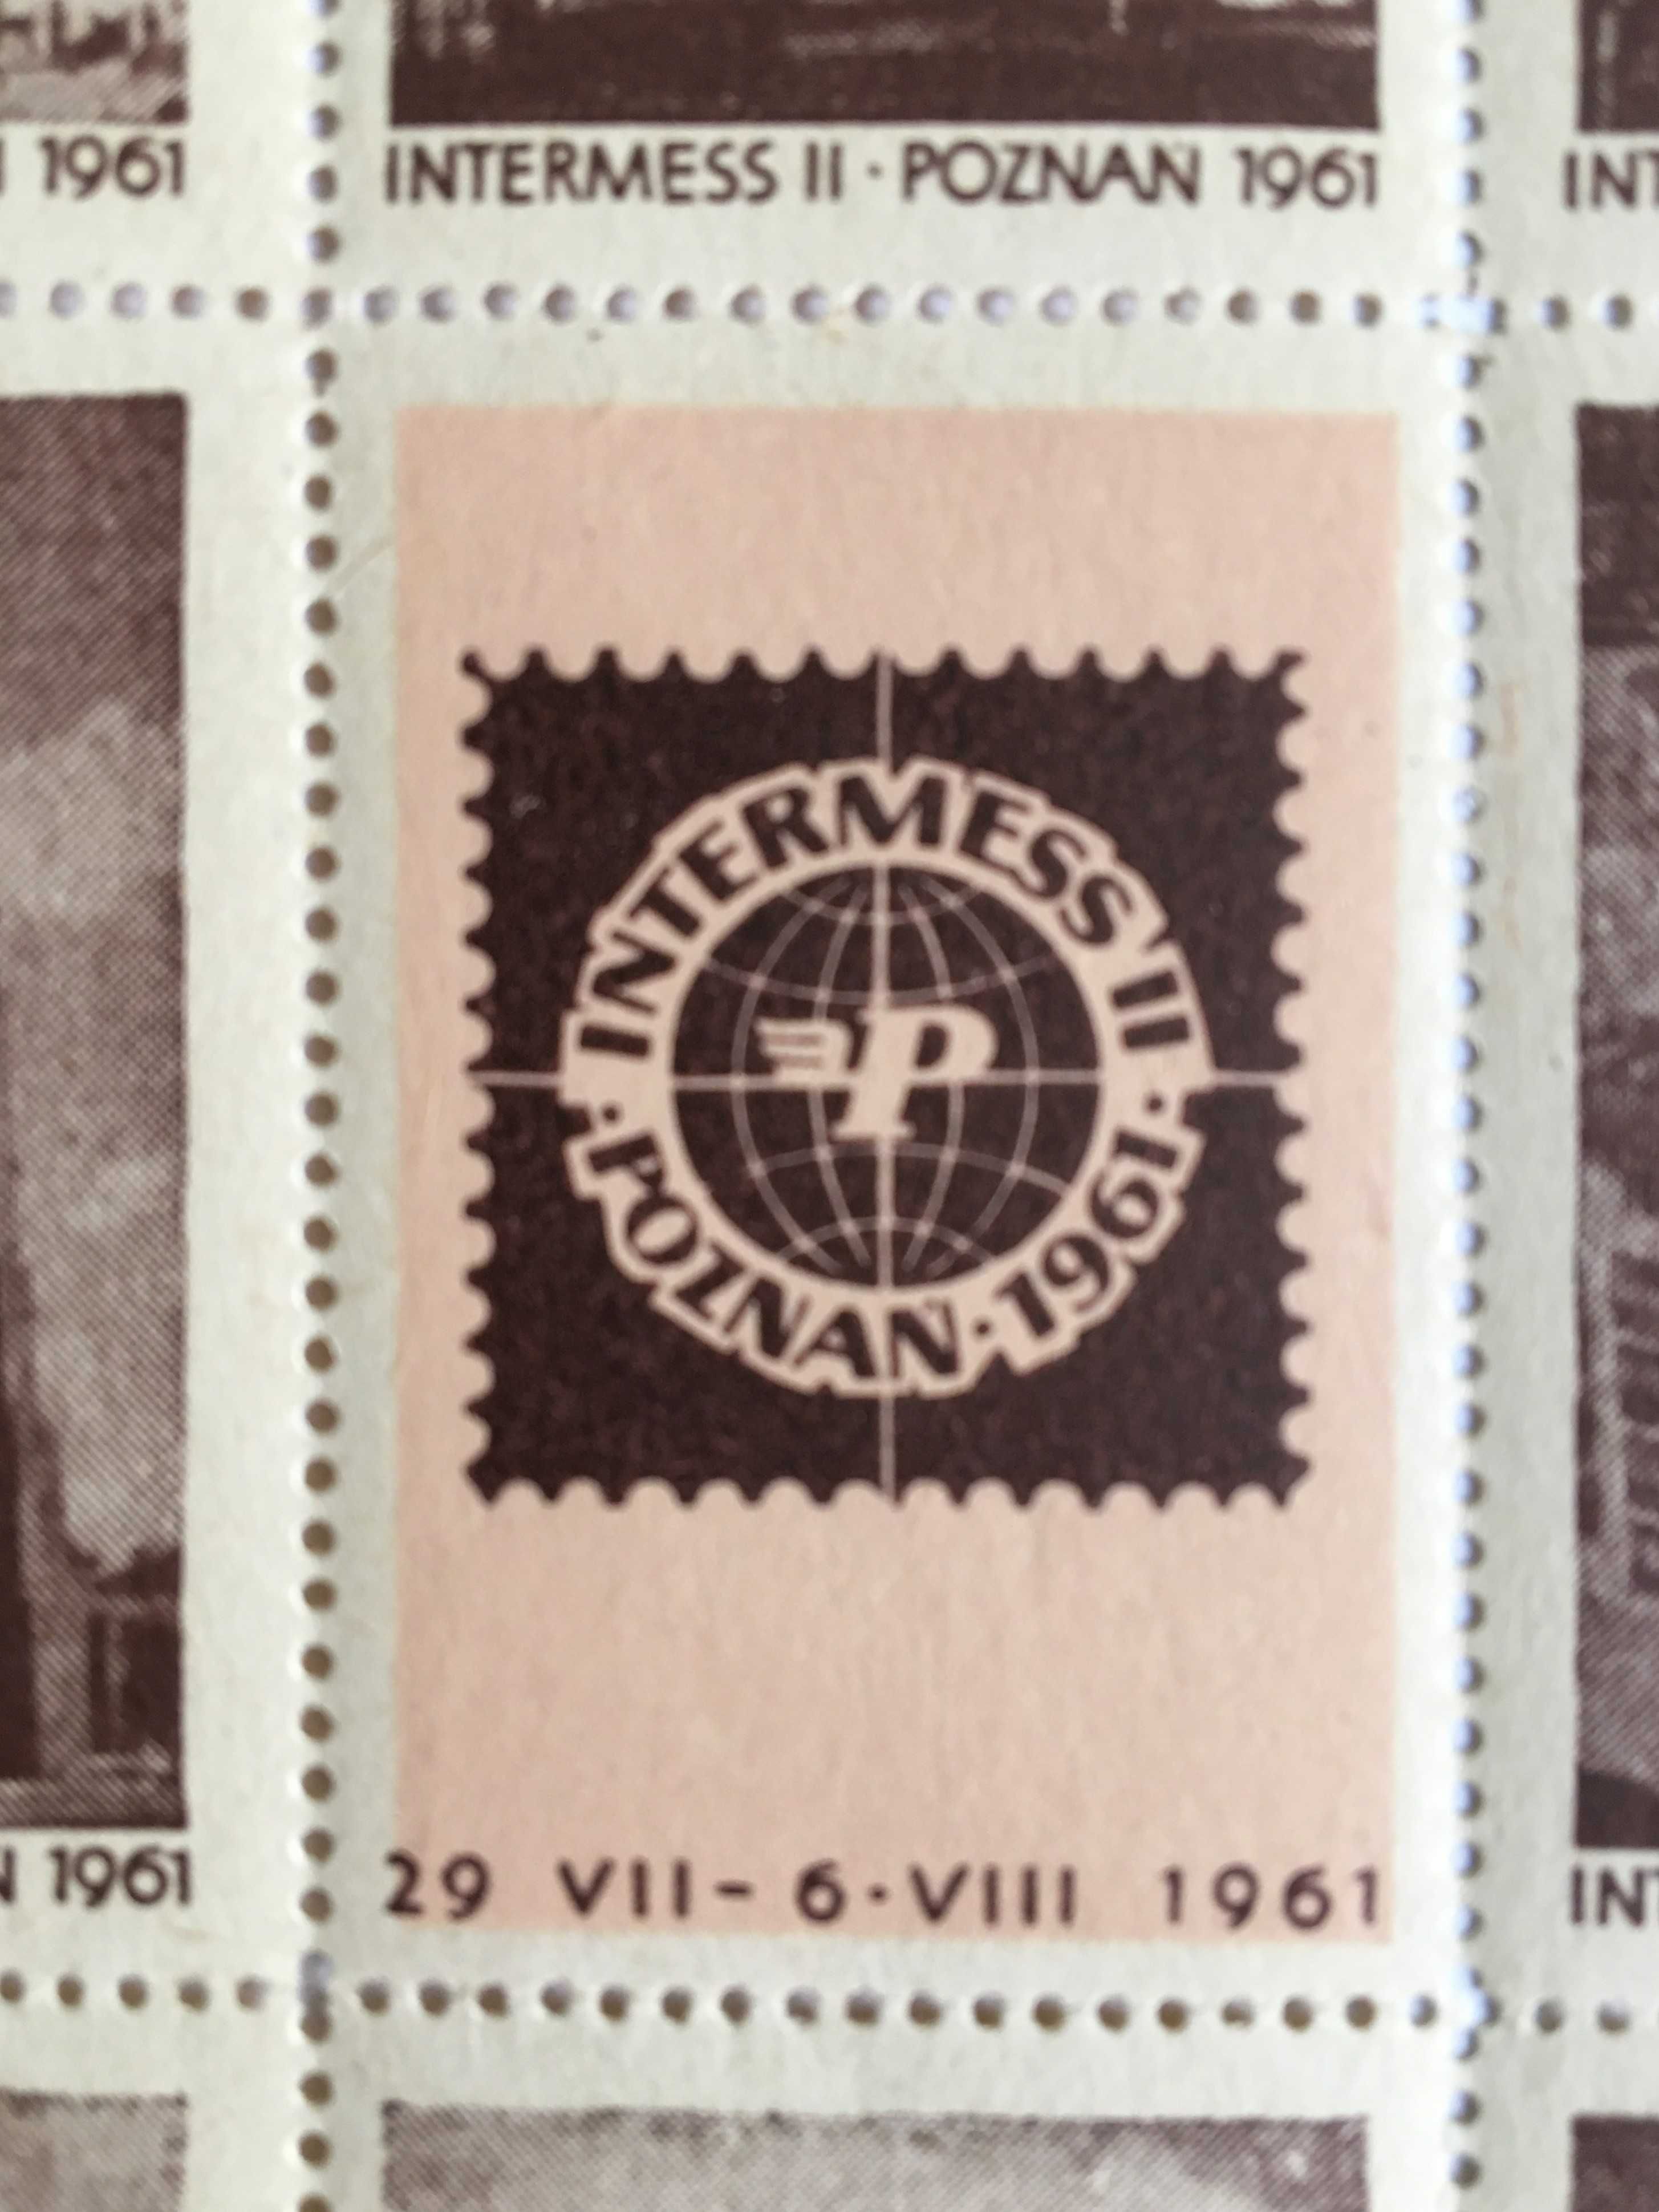 Bloczek filatelistyczny Intermess II Poznań 1961 rok